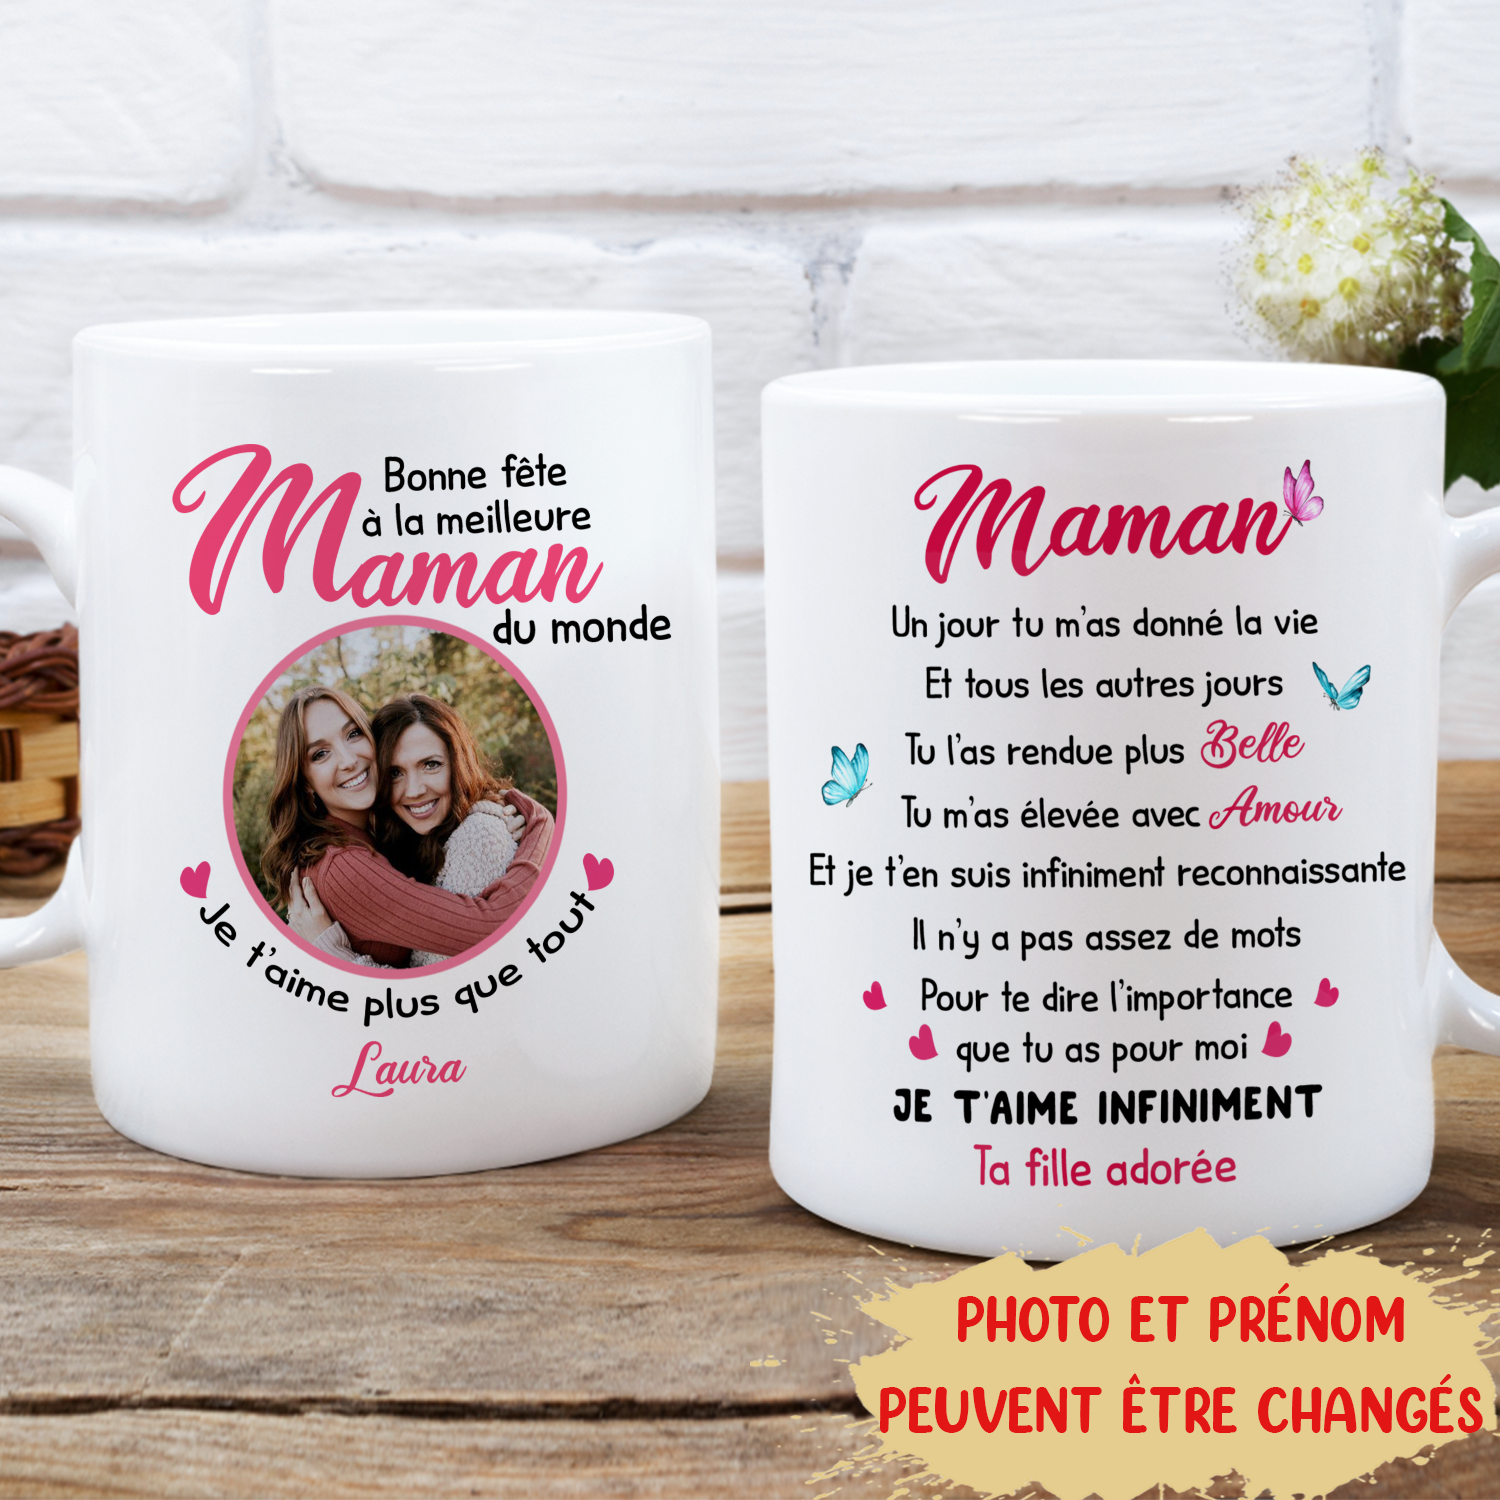 Mug définition maman Cadeau Maman Idée Cadeau Maman Fête des Mères Cadeau  Anniversaire -  France